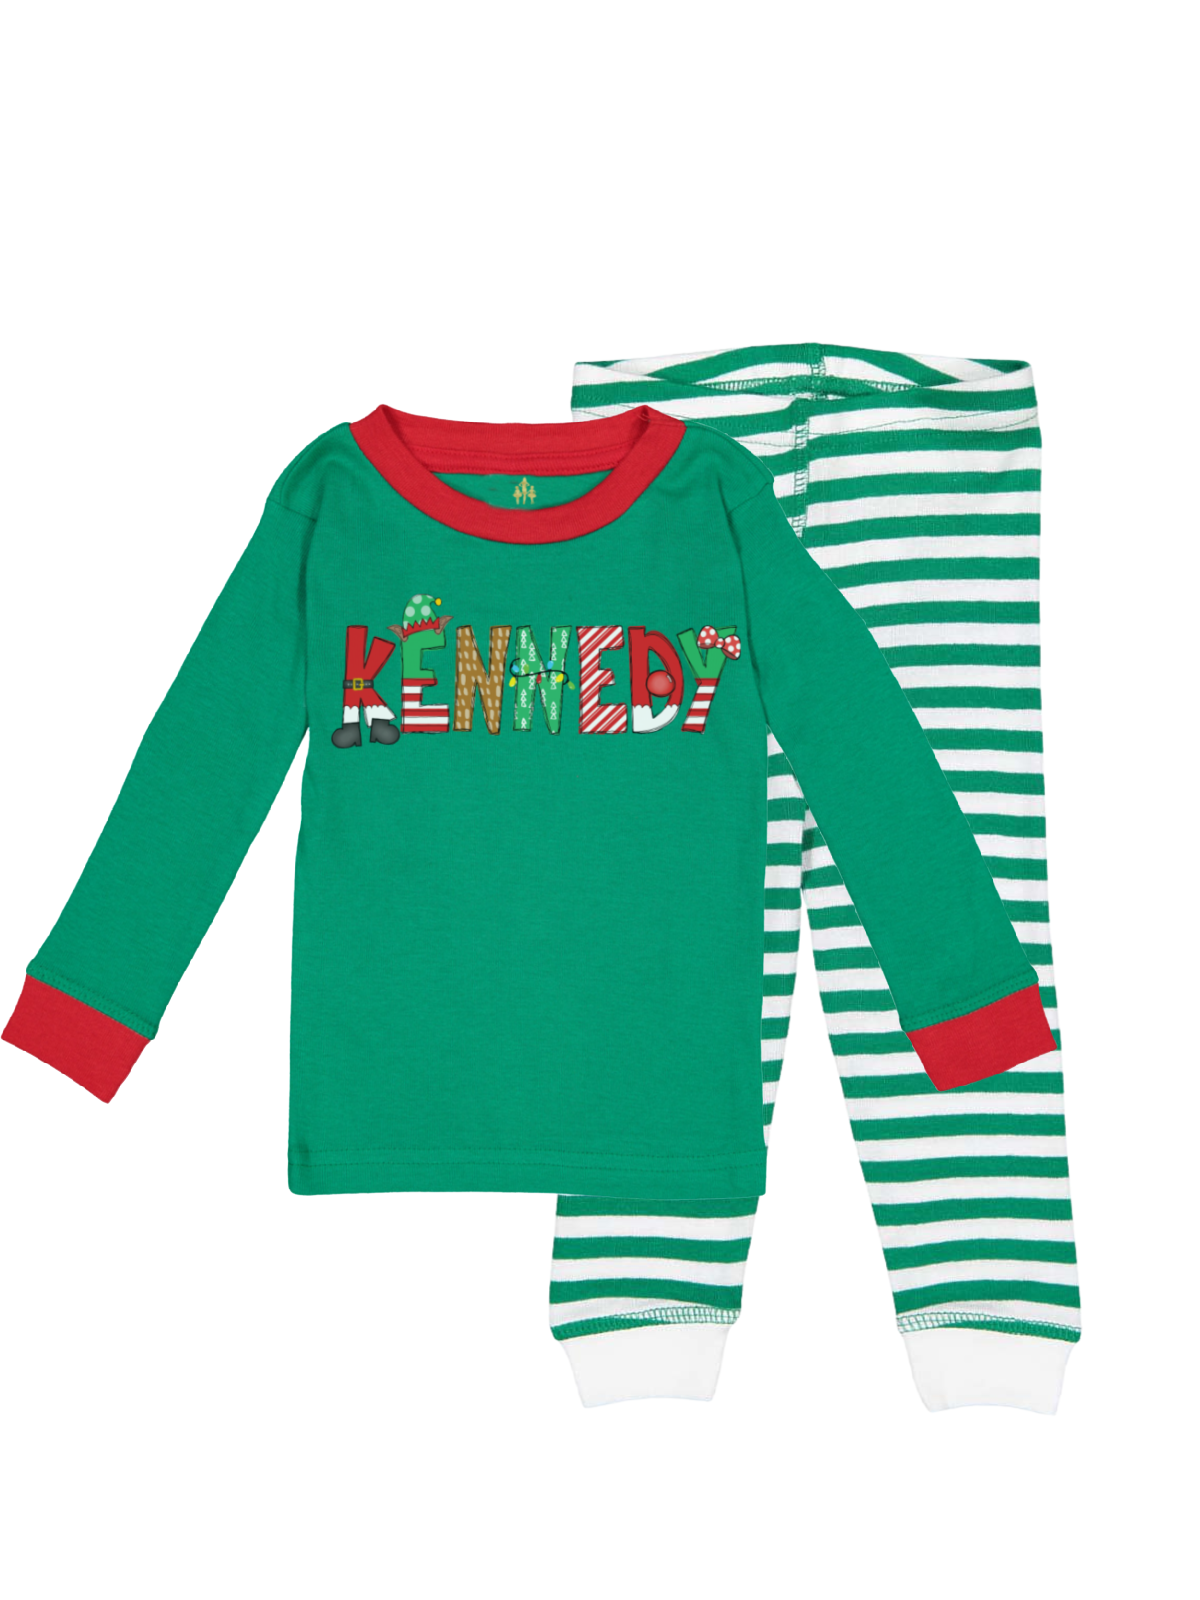 Kids Custom Christmas Pajamas Red and Stripes